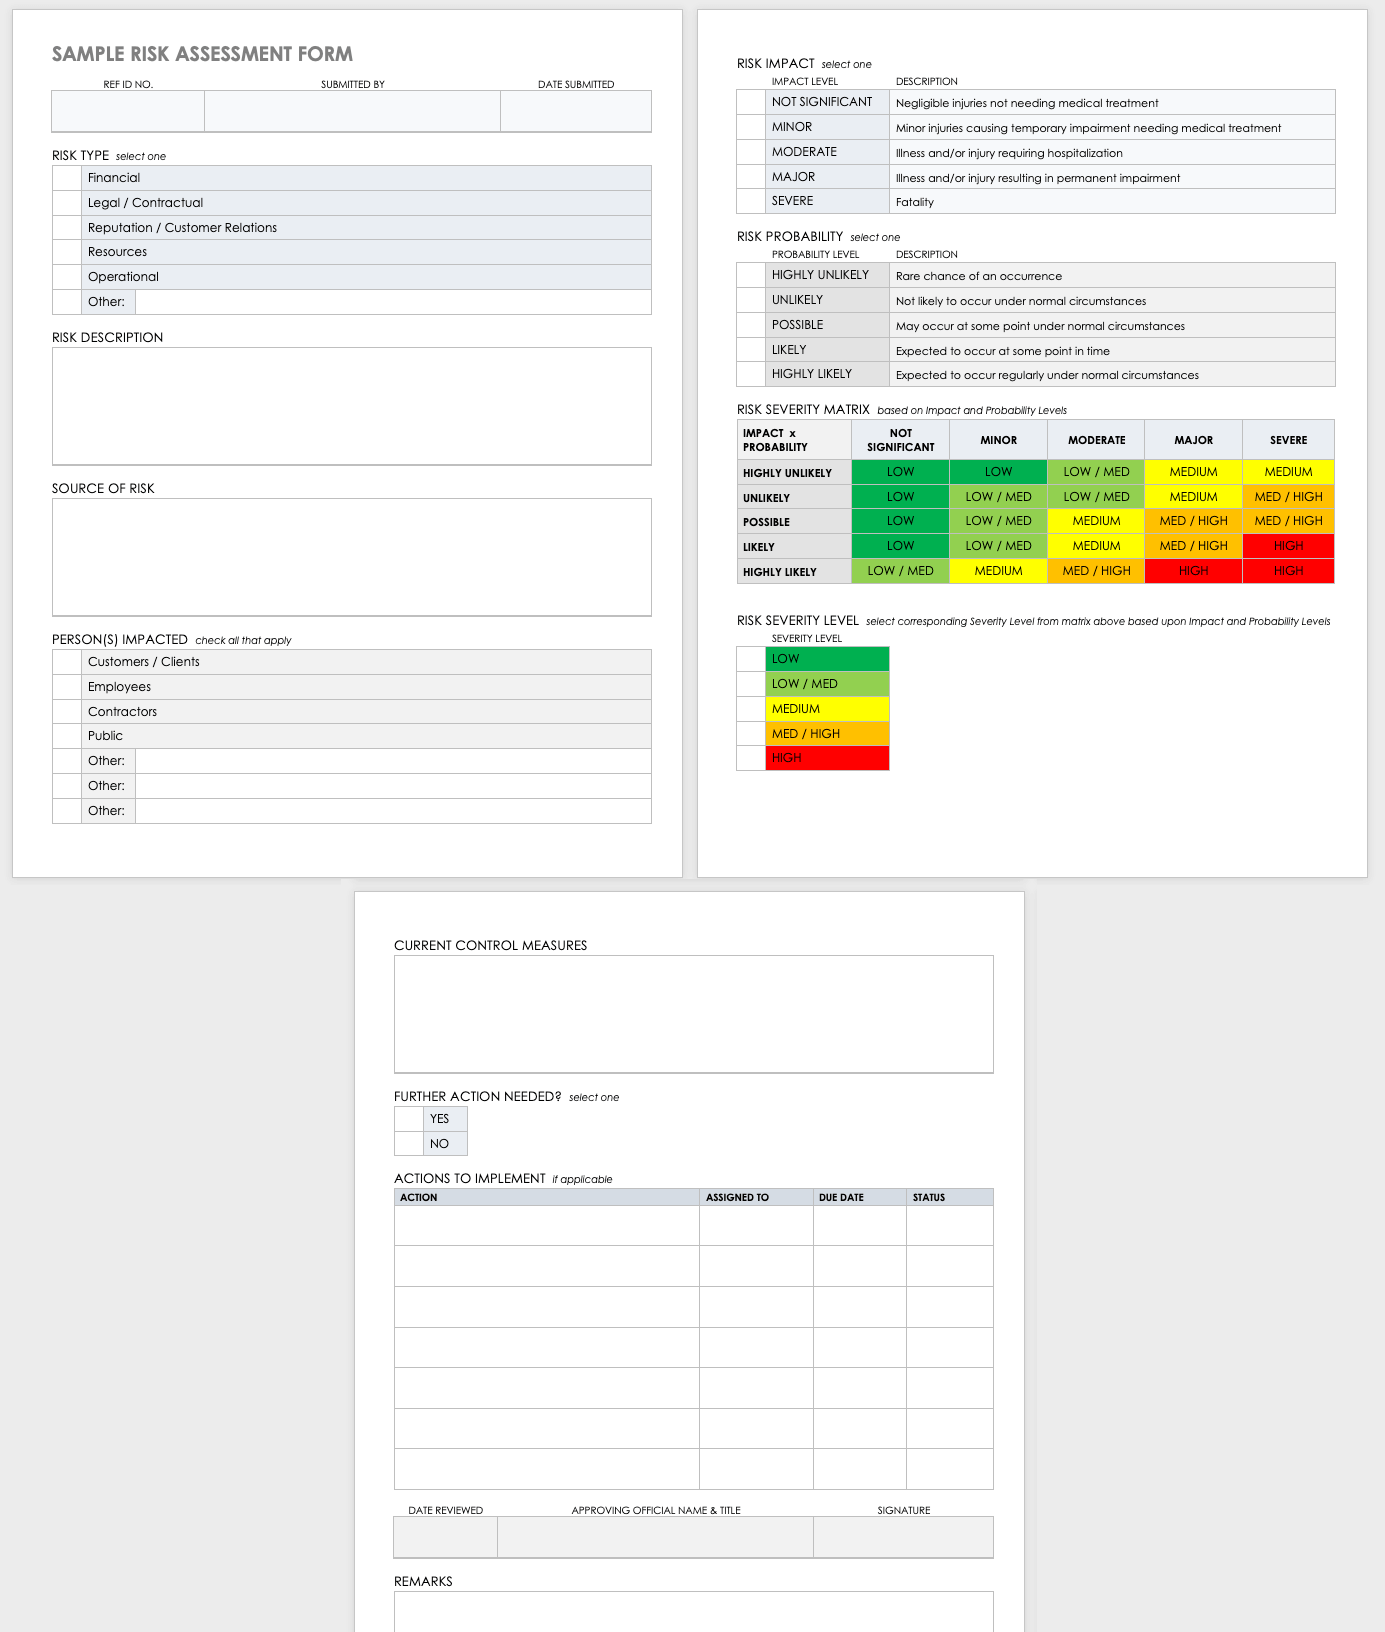 hazard assessment form template